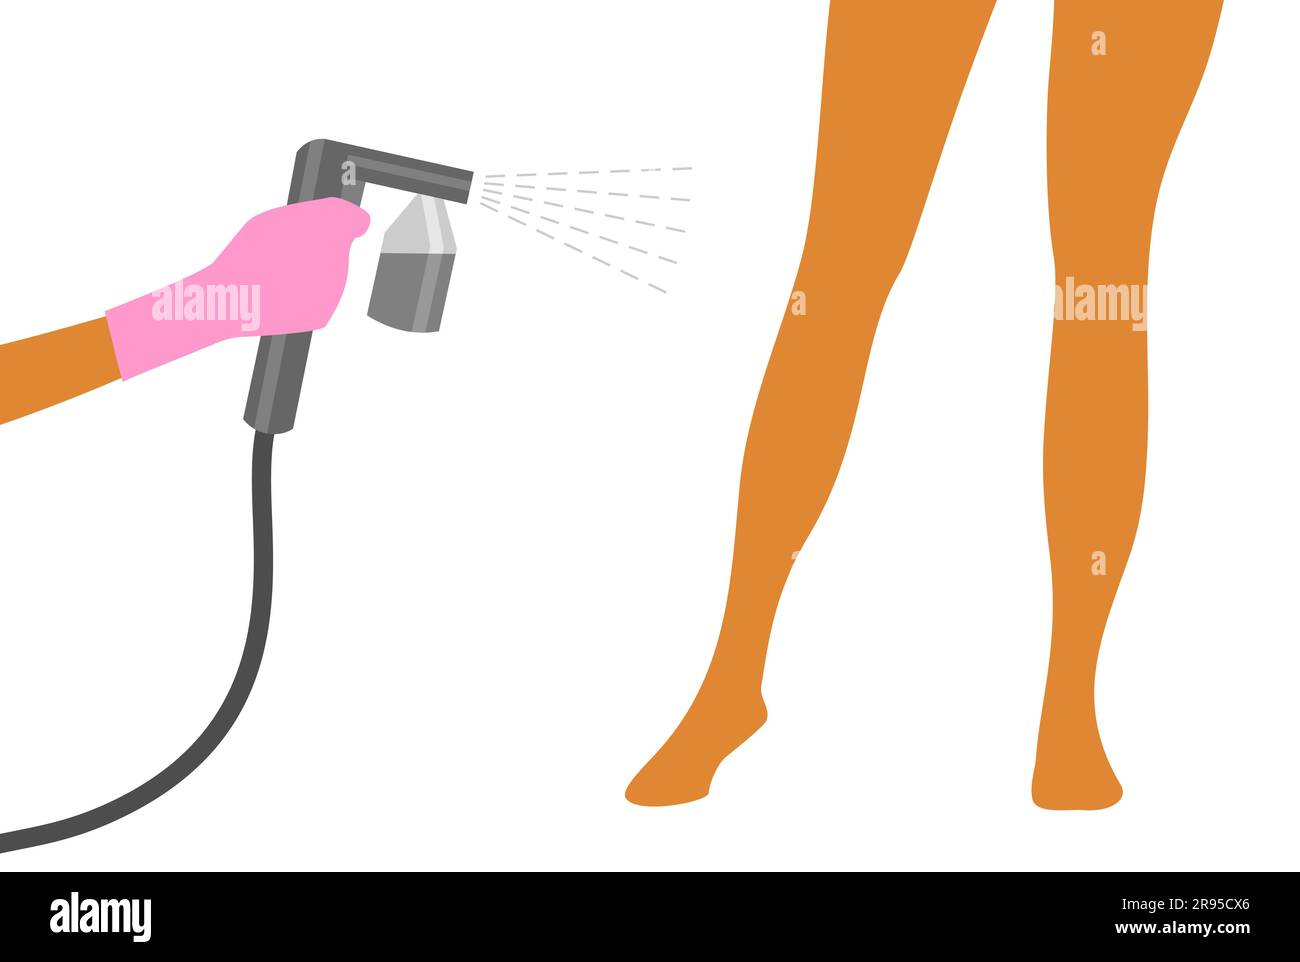 Indossa un guanto rosa con una macchina per abbronzatura spray grigia per abbronzarti sulle gambe di una donna. Illustrazione vettoriale della procedura di abbronzatura automatica Illustrazione Vettoriale